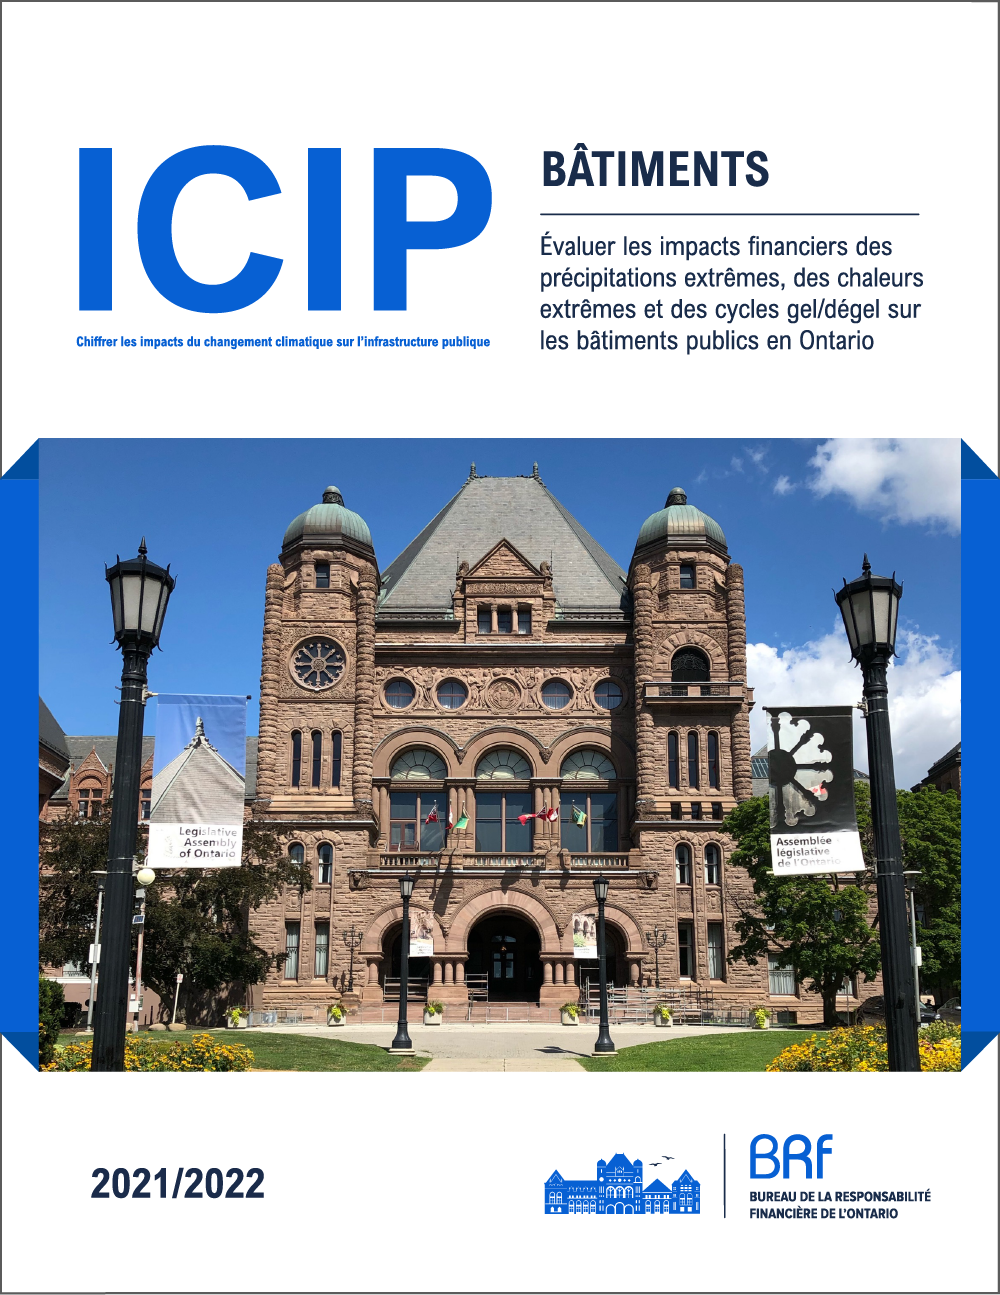 ICIP : Bâtiments – Évaluer les impacts financiers des précipitations extrémes, des chaleurs extrêmes et des cycles gel/dégel sur les bâtiments publics en Ontario